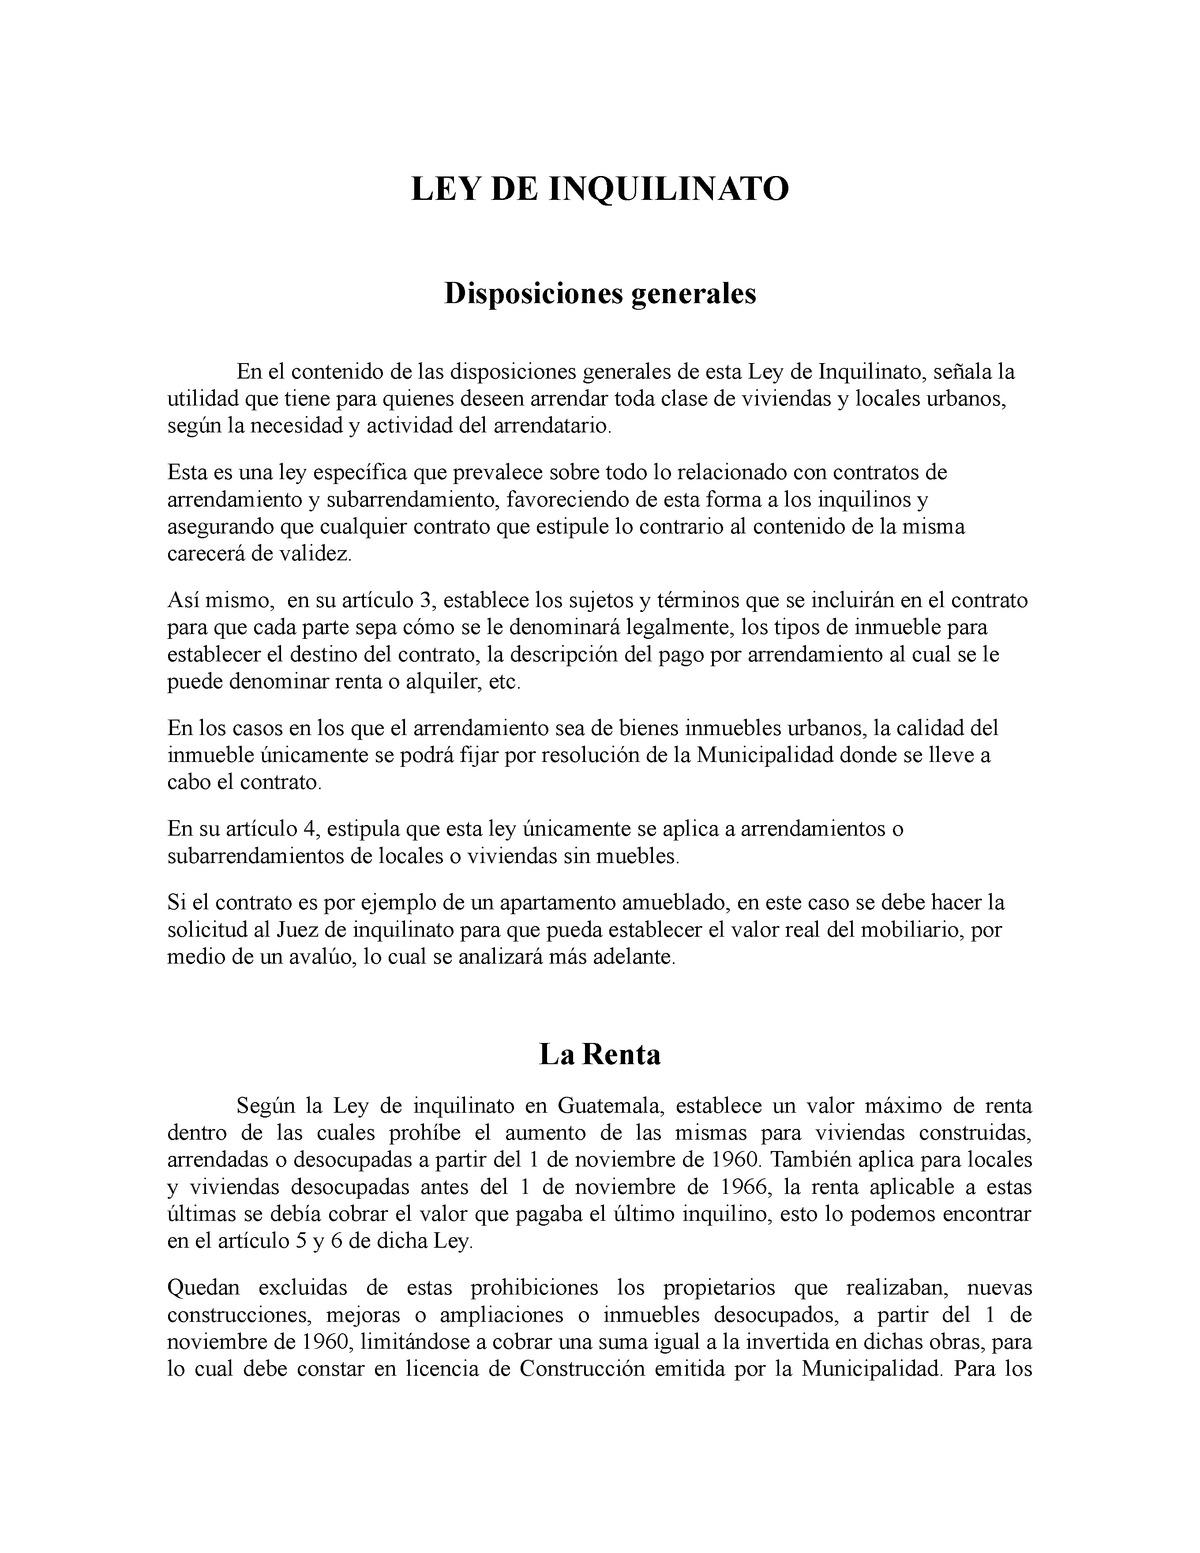 Analisis Ley de Inquilinato de Guatemala Decreto LEY DE INQUILINATO